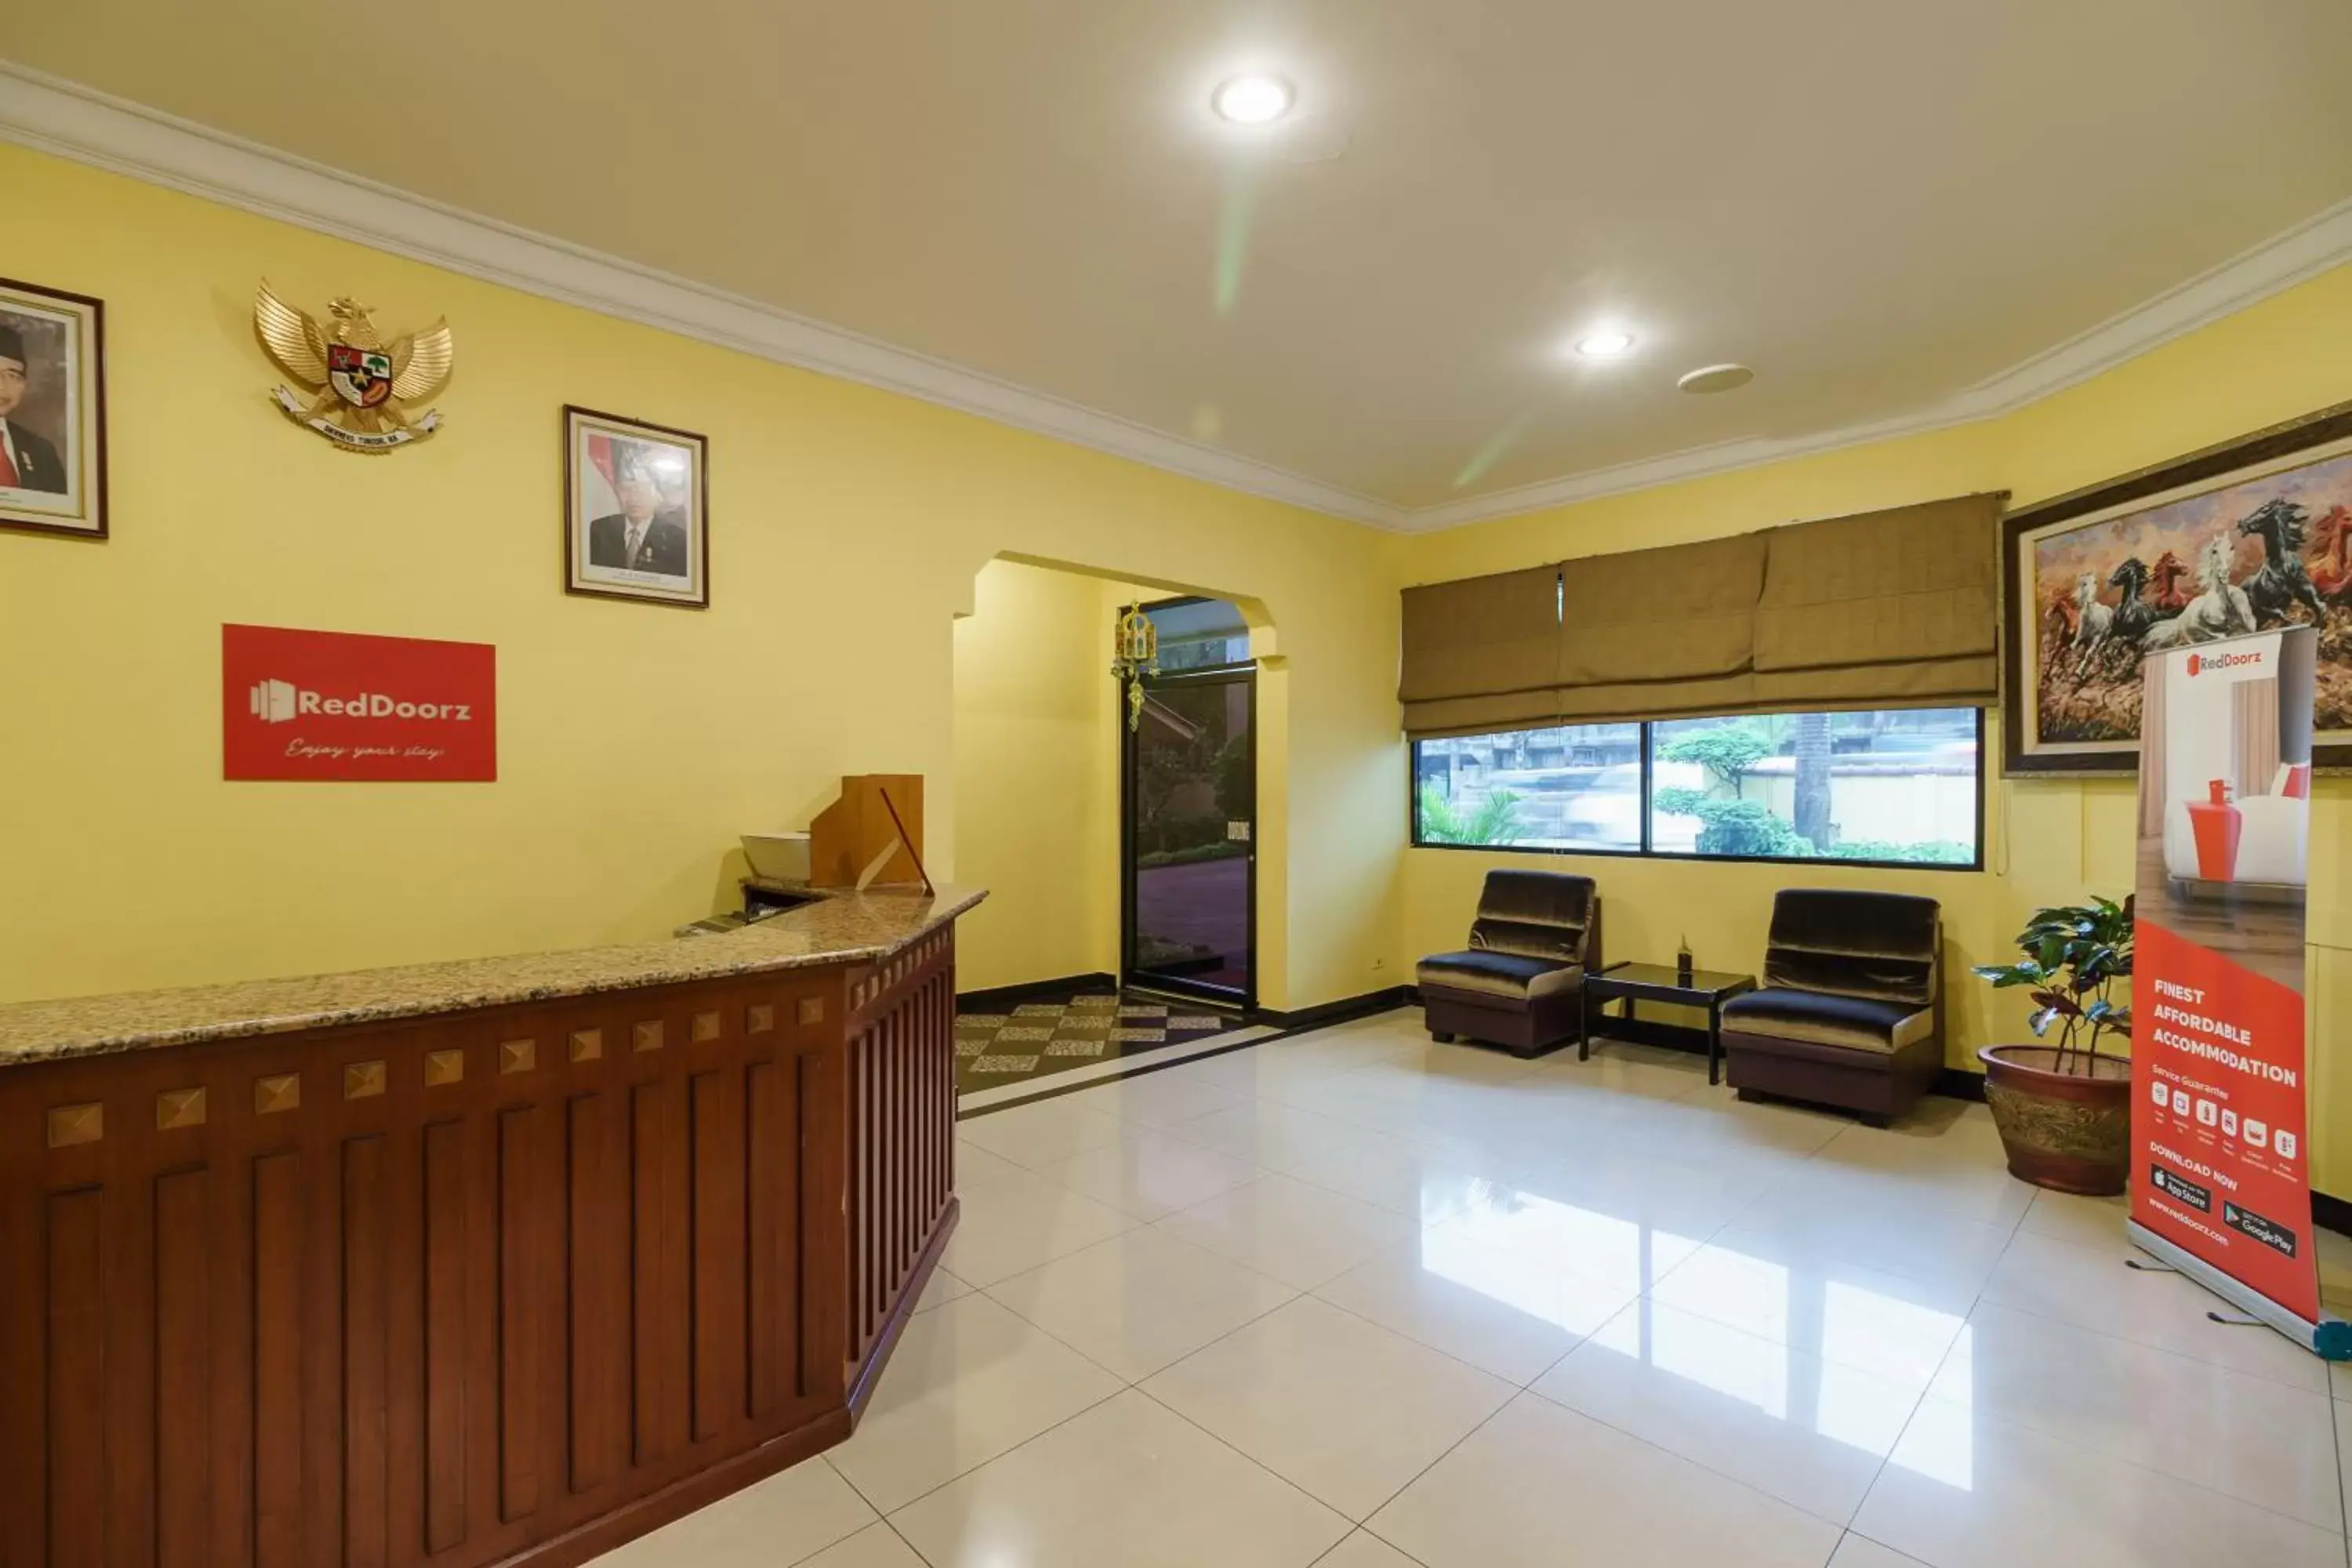 Lobby or reception, Lobby/Reception in RedDoorz Plus near Ancol